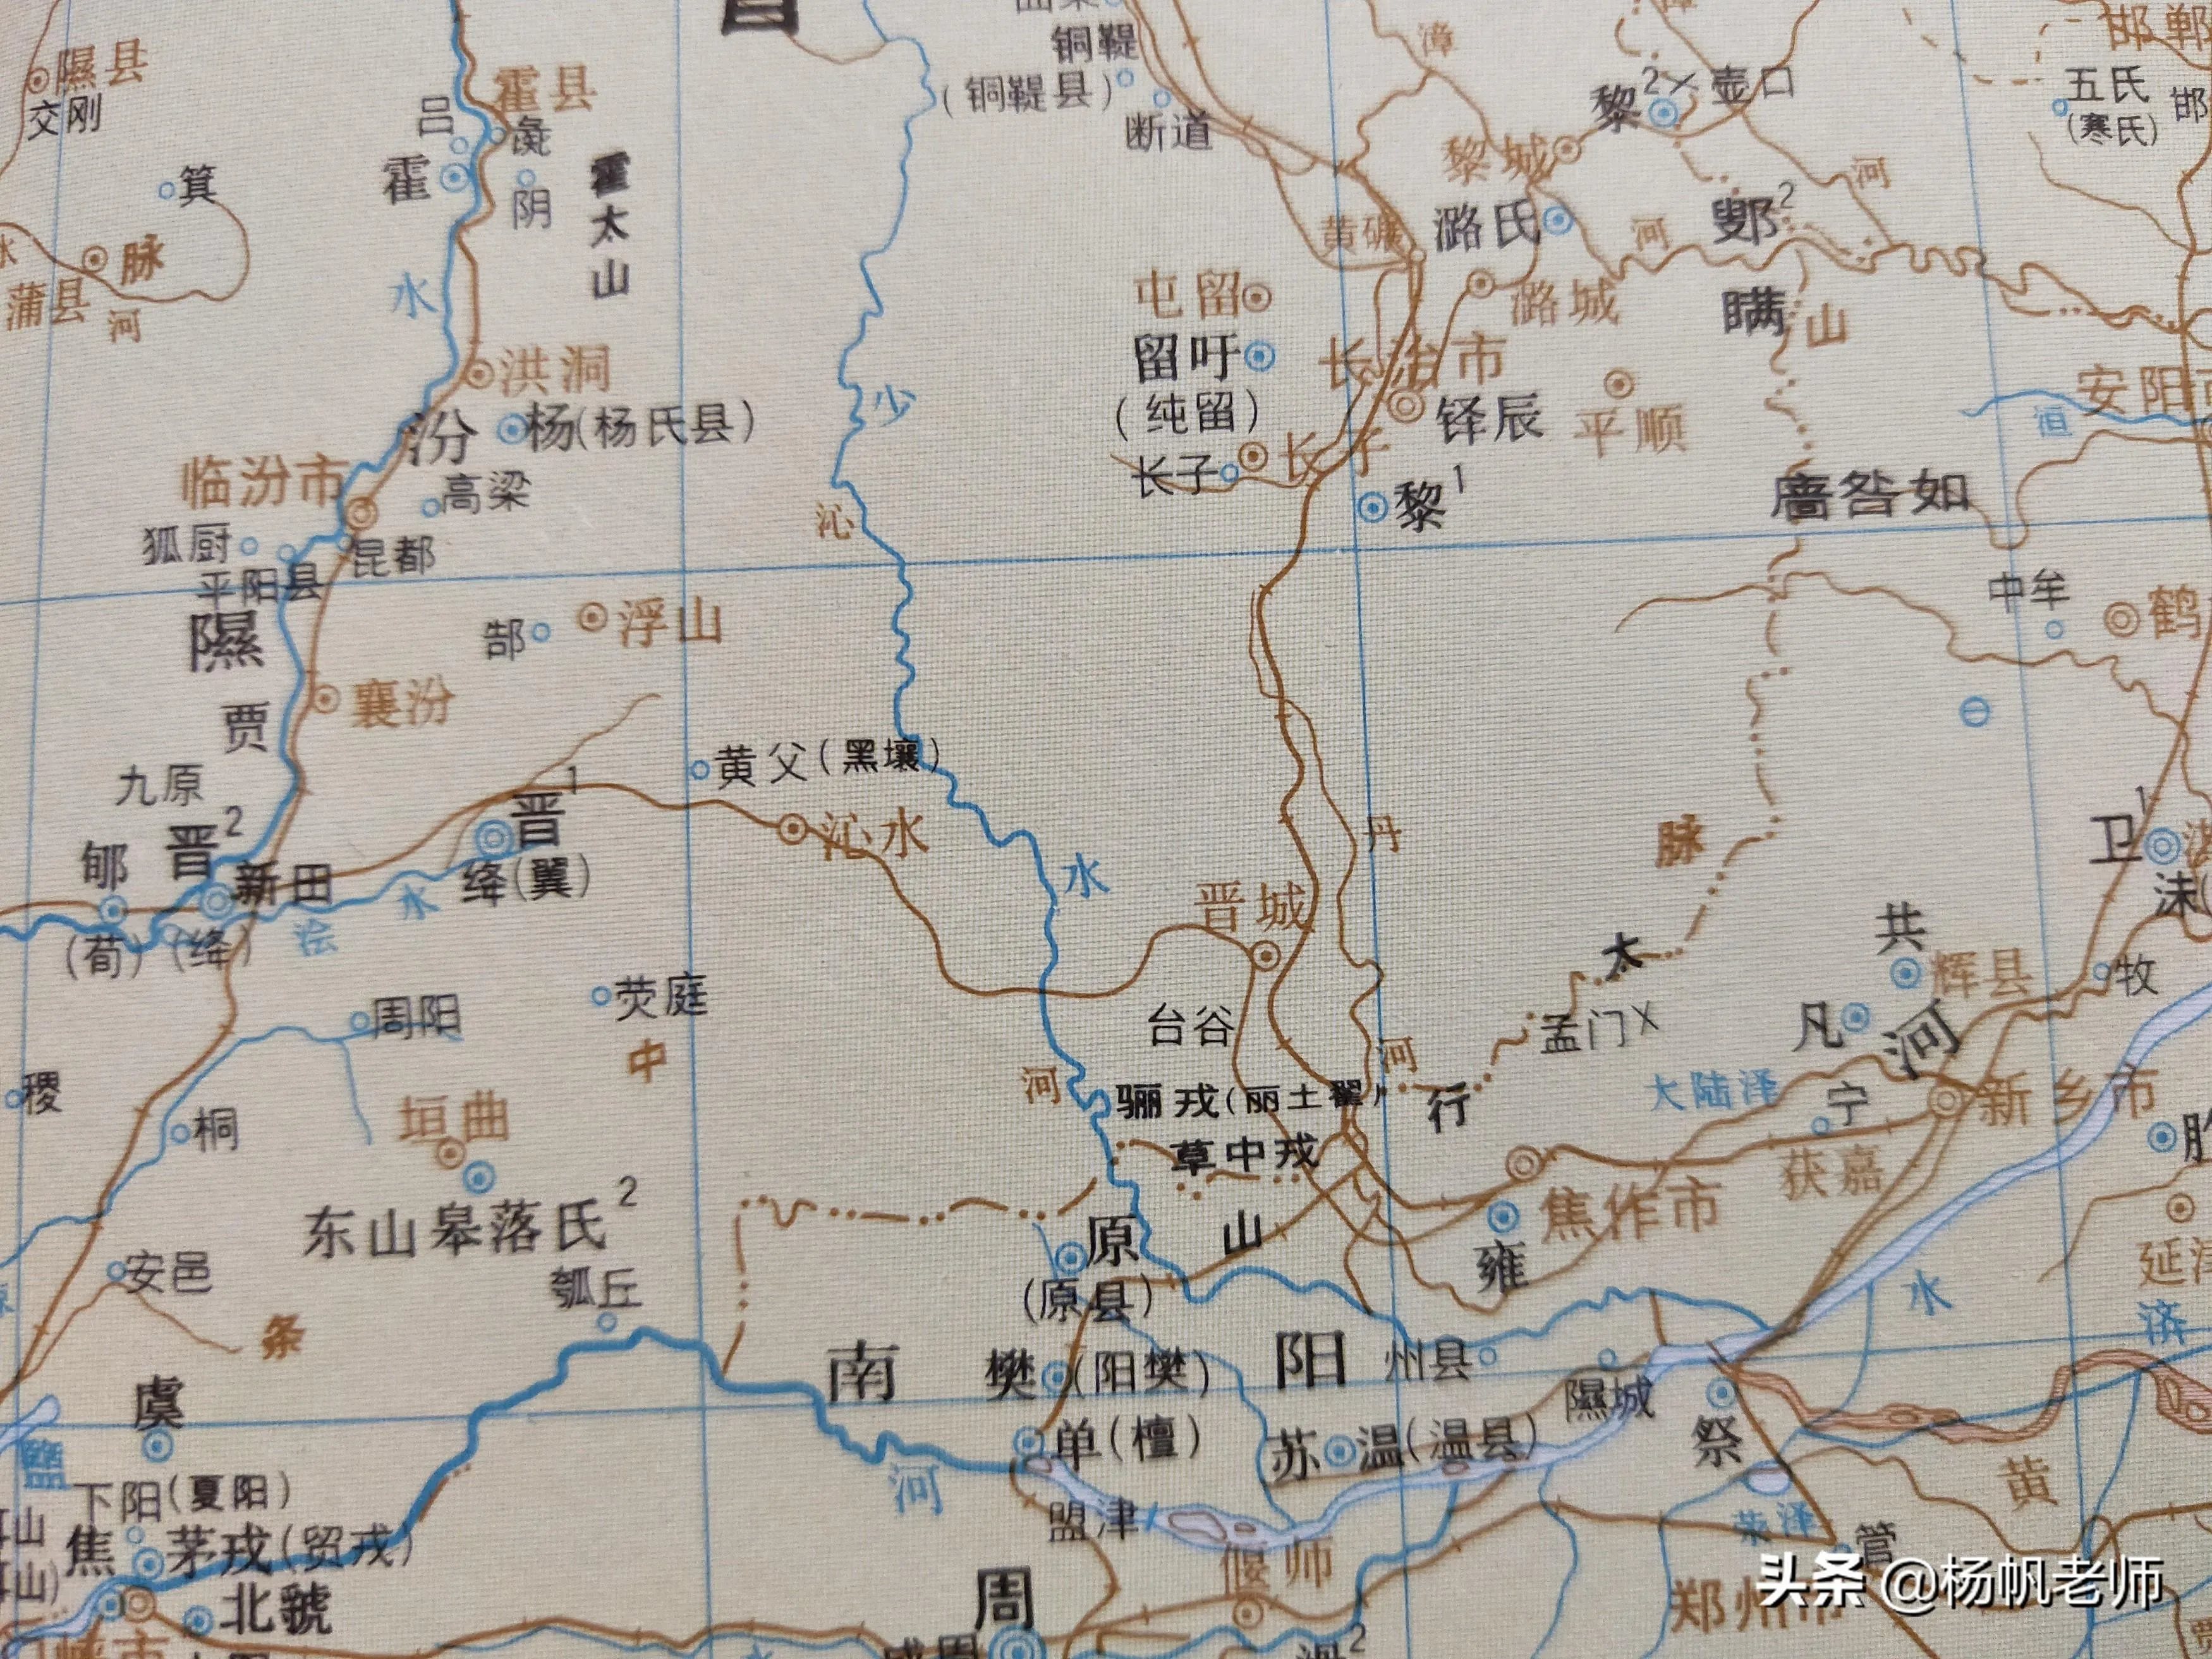 晋城是哪个省的城市 | 历史时期晋城的地名及区划演变过程